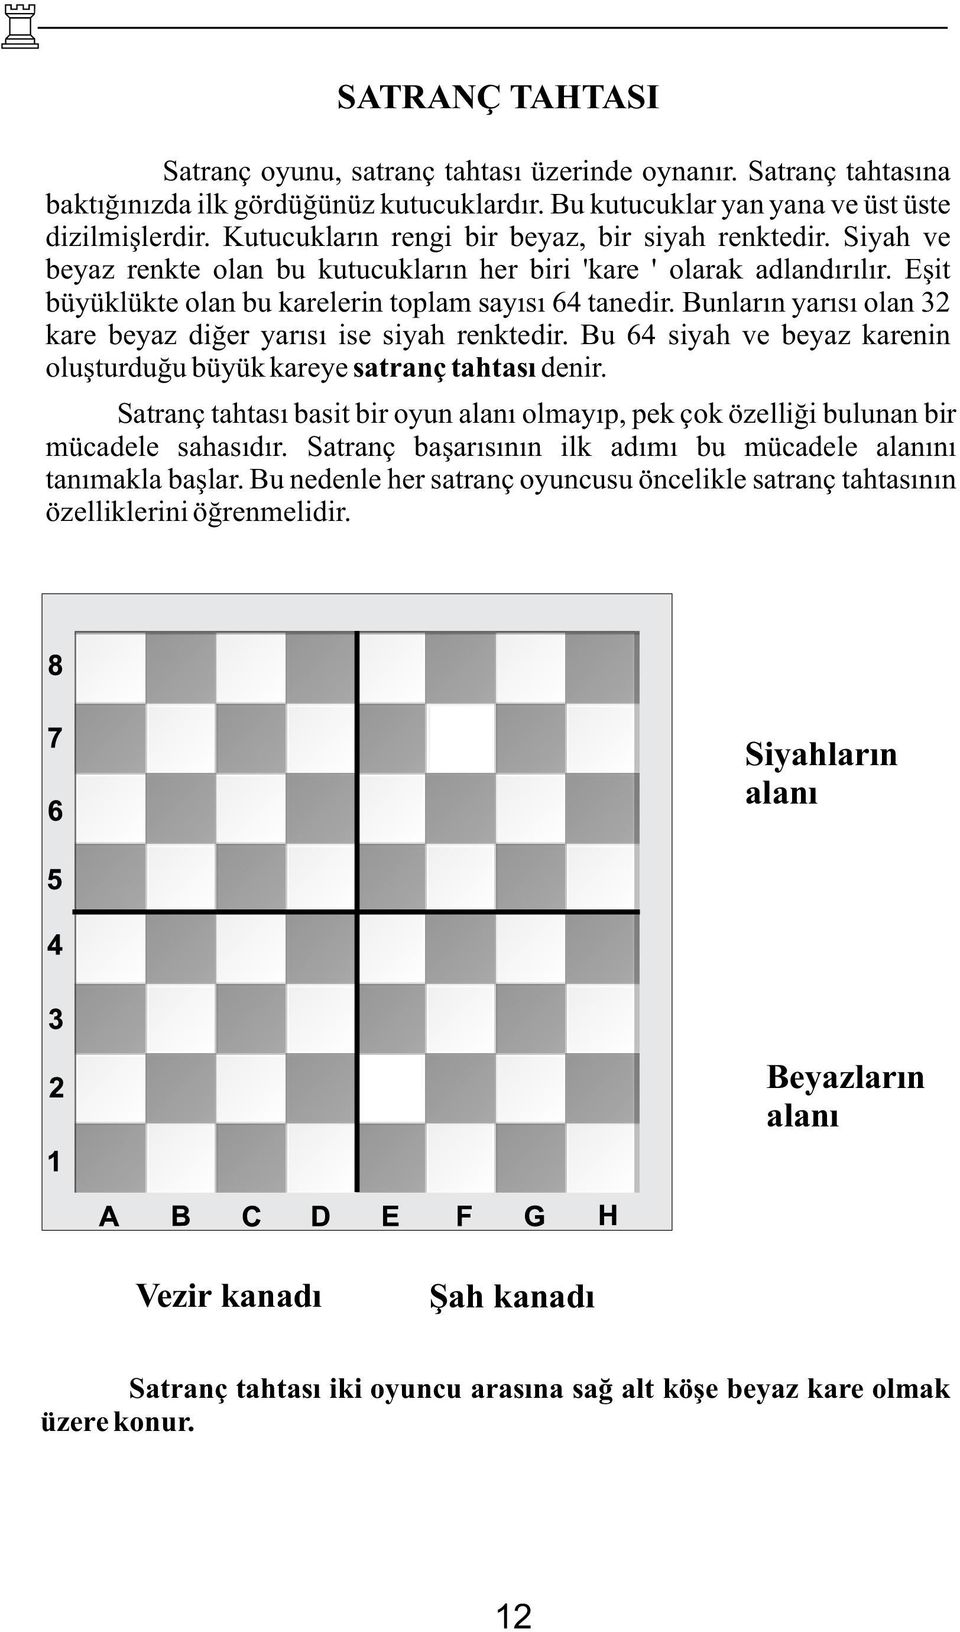 Bunların yarısı olan 32 kare beyaz diğer yarısı ise siyah renktedir. Bu 64 siyah ve beyaz karenin oluşturduğu büyük kareye satranç tahtası denir.